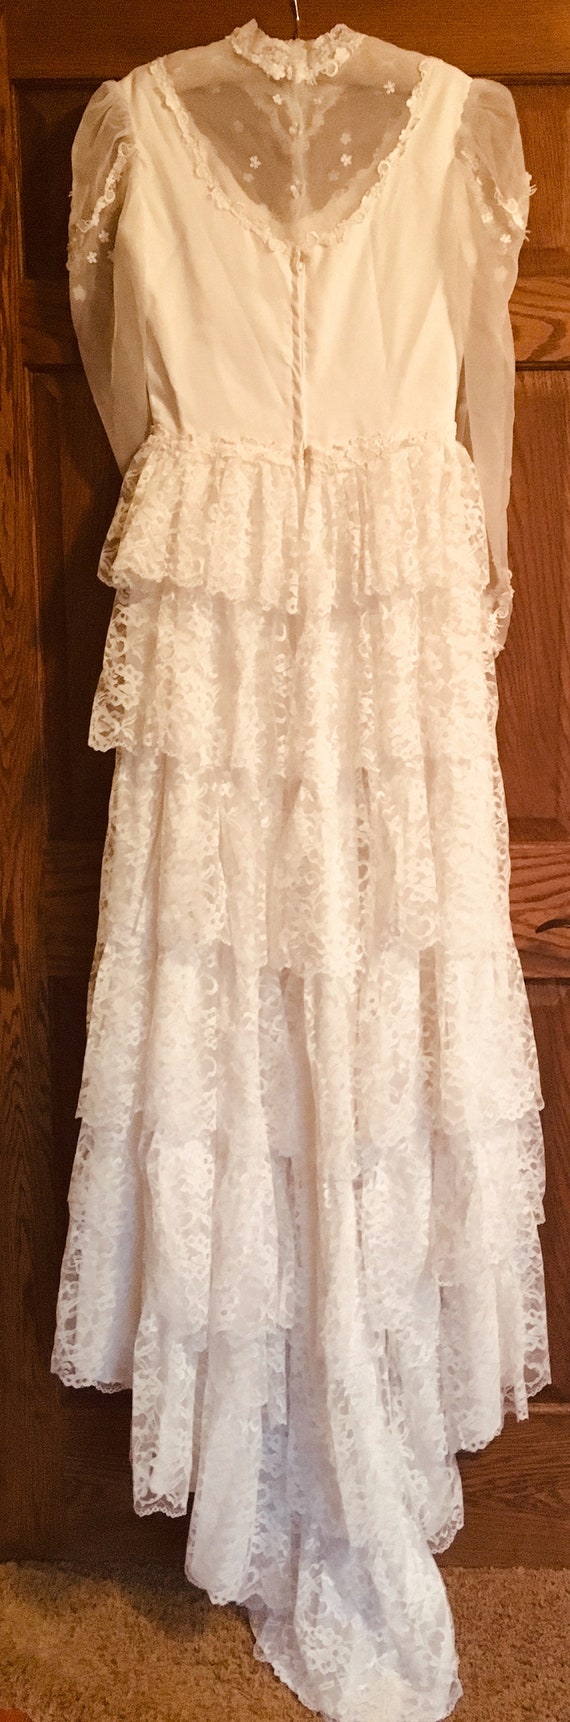 Carol Gowns by Mr Walter Vintage Wedding Dress - Gem